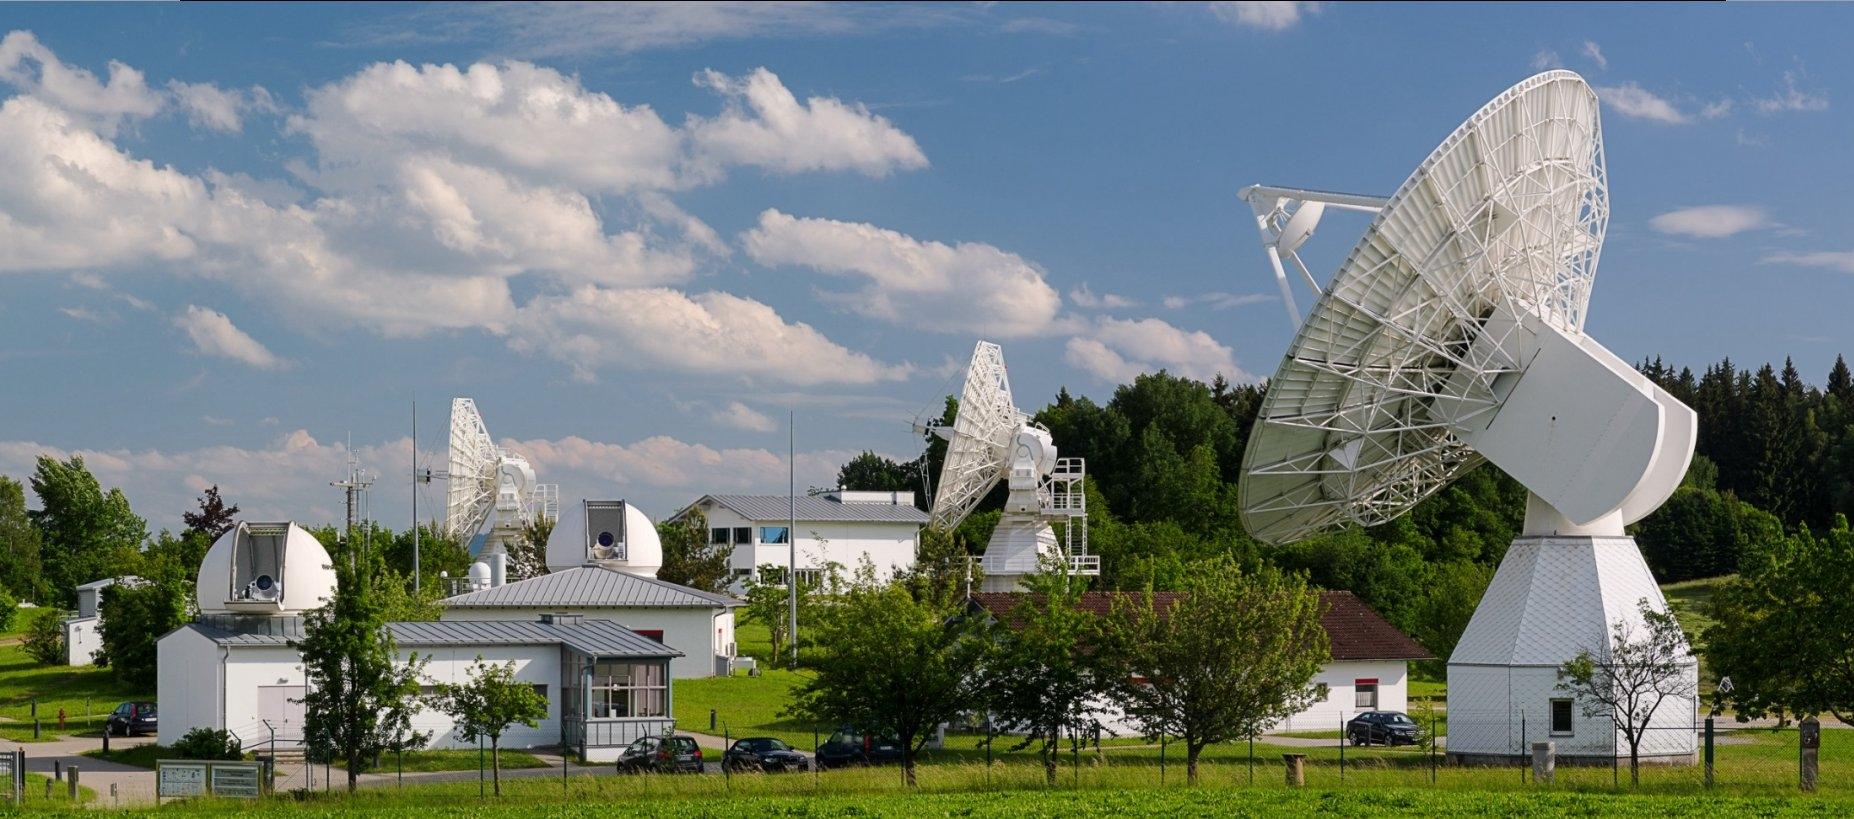 Το χωριό στη Γερμανία που είναι συνδεδεμένο με το διάστημα